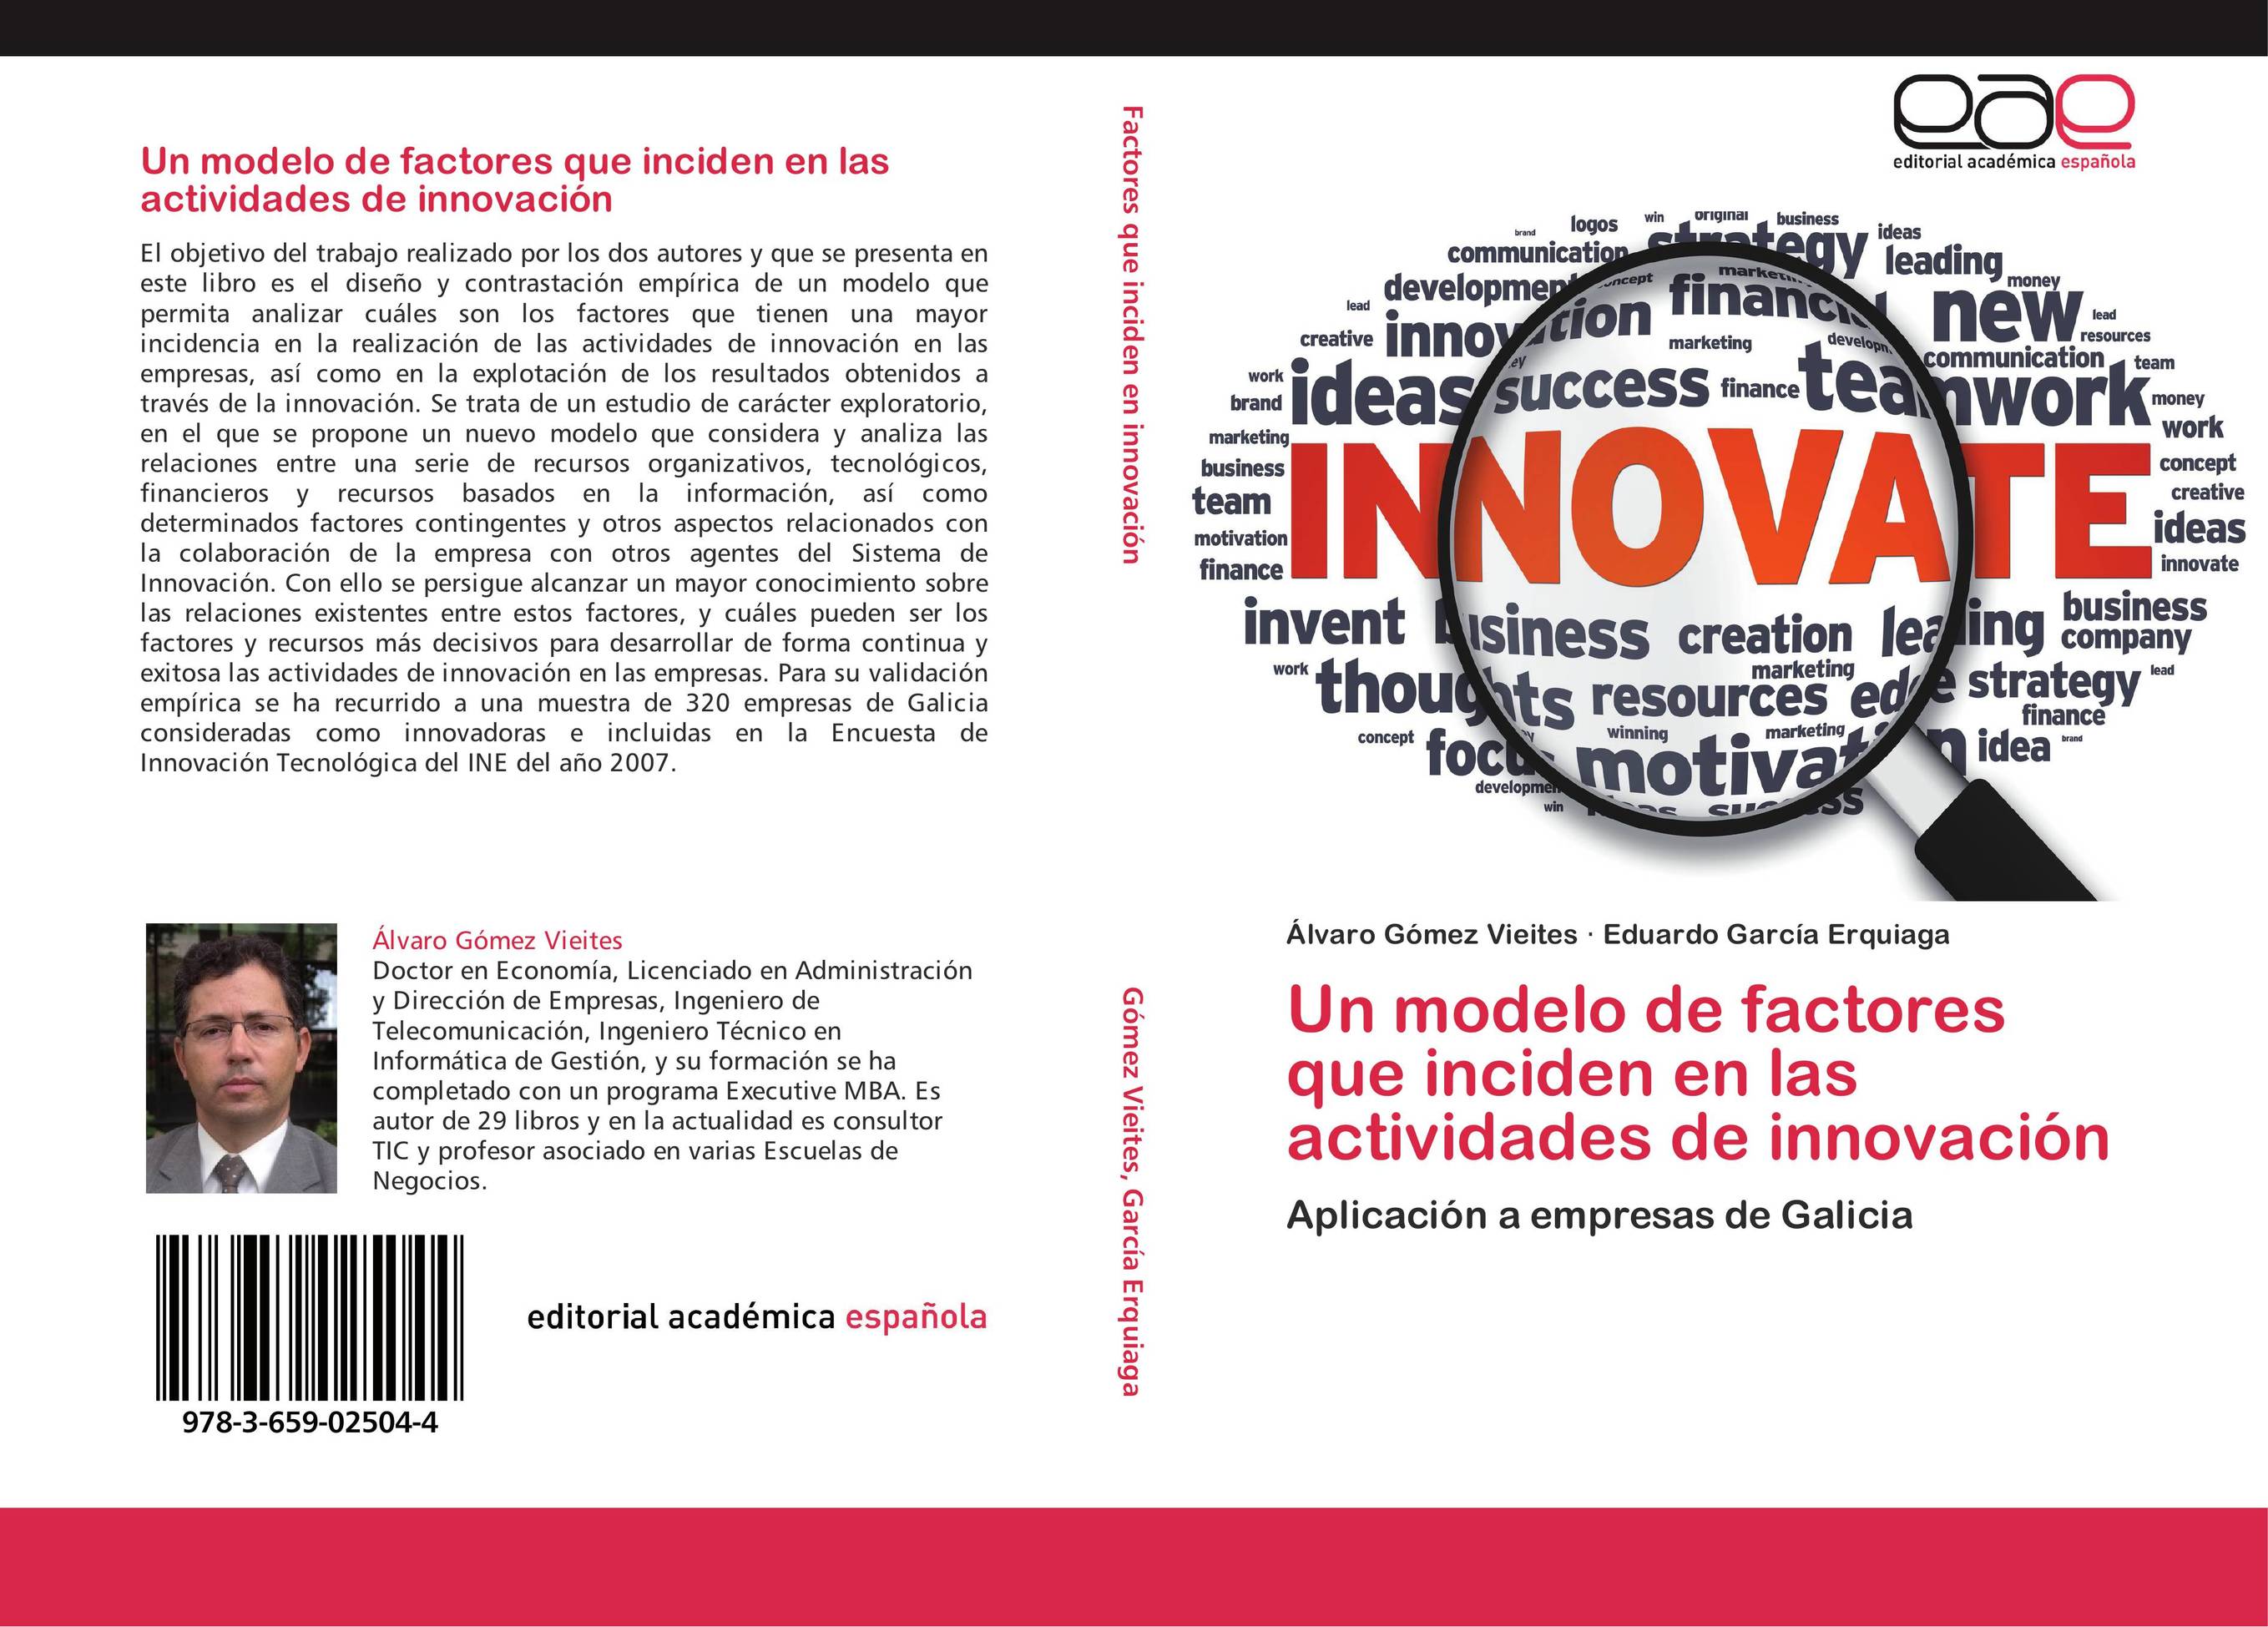 Un modelo de factores que inciden en las actividades de innovación